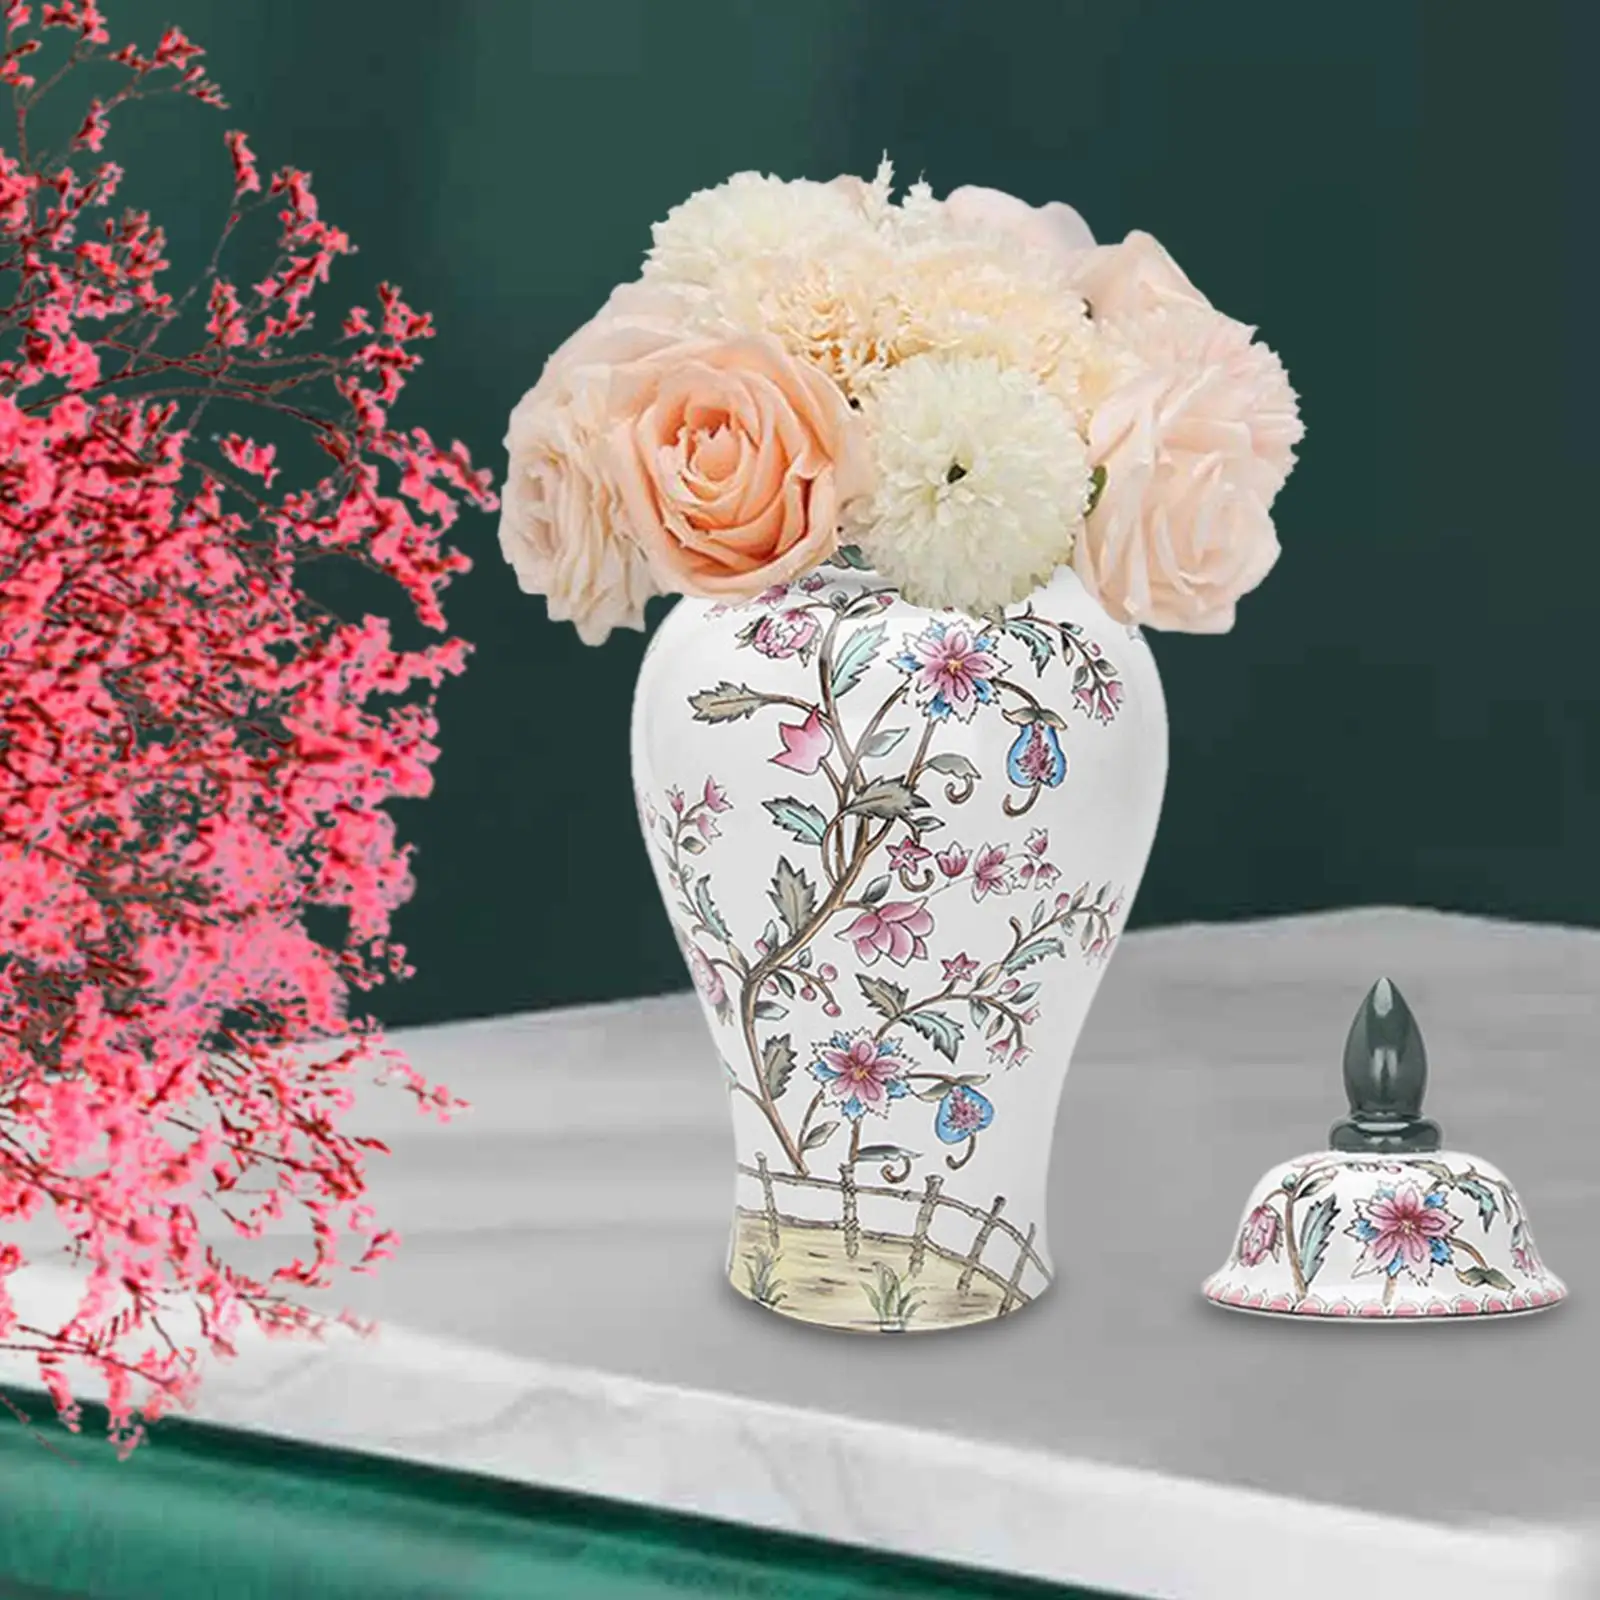 Ceramic Flower Vase Temple Jar Porcelain Ginger Jar for Dining Table Party